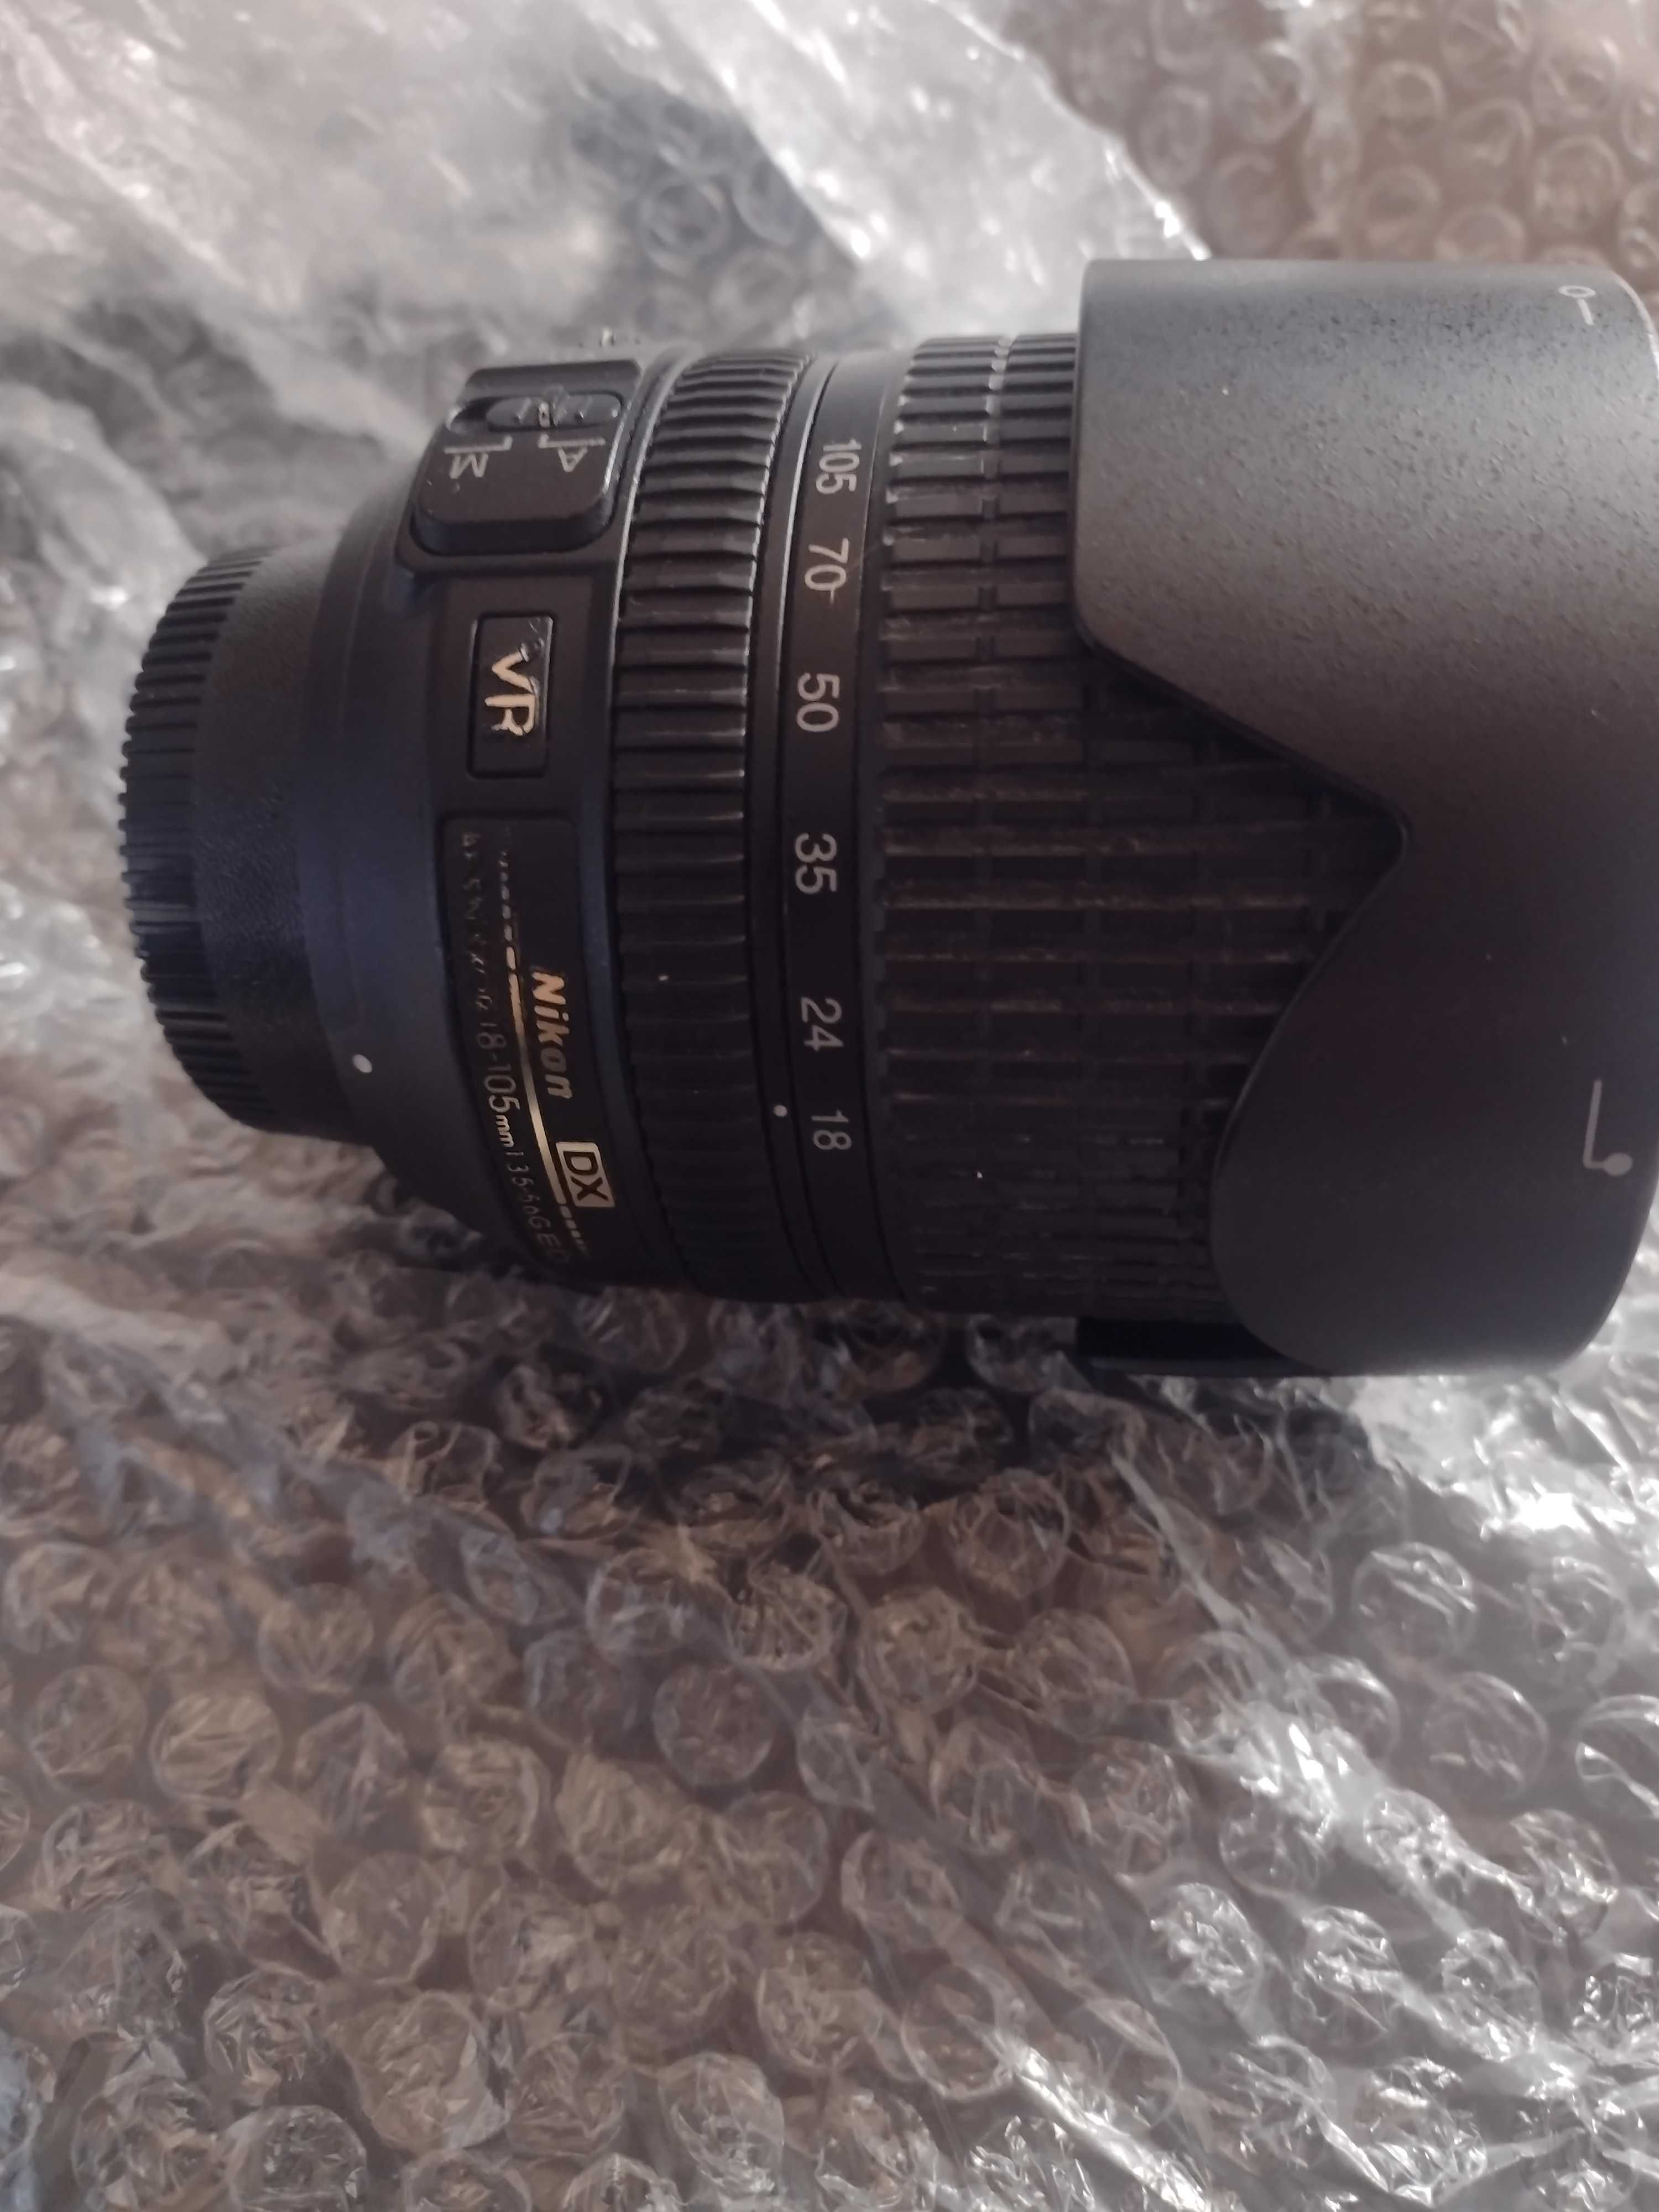 Nikon D90, com Kit completo para começar a ganhar dinheiro.